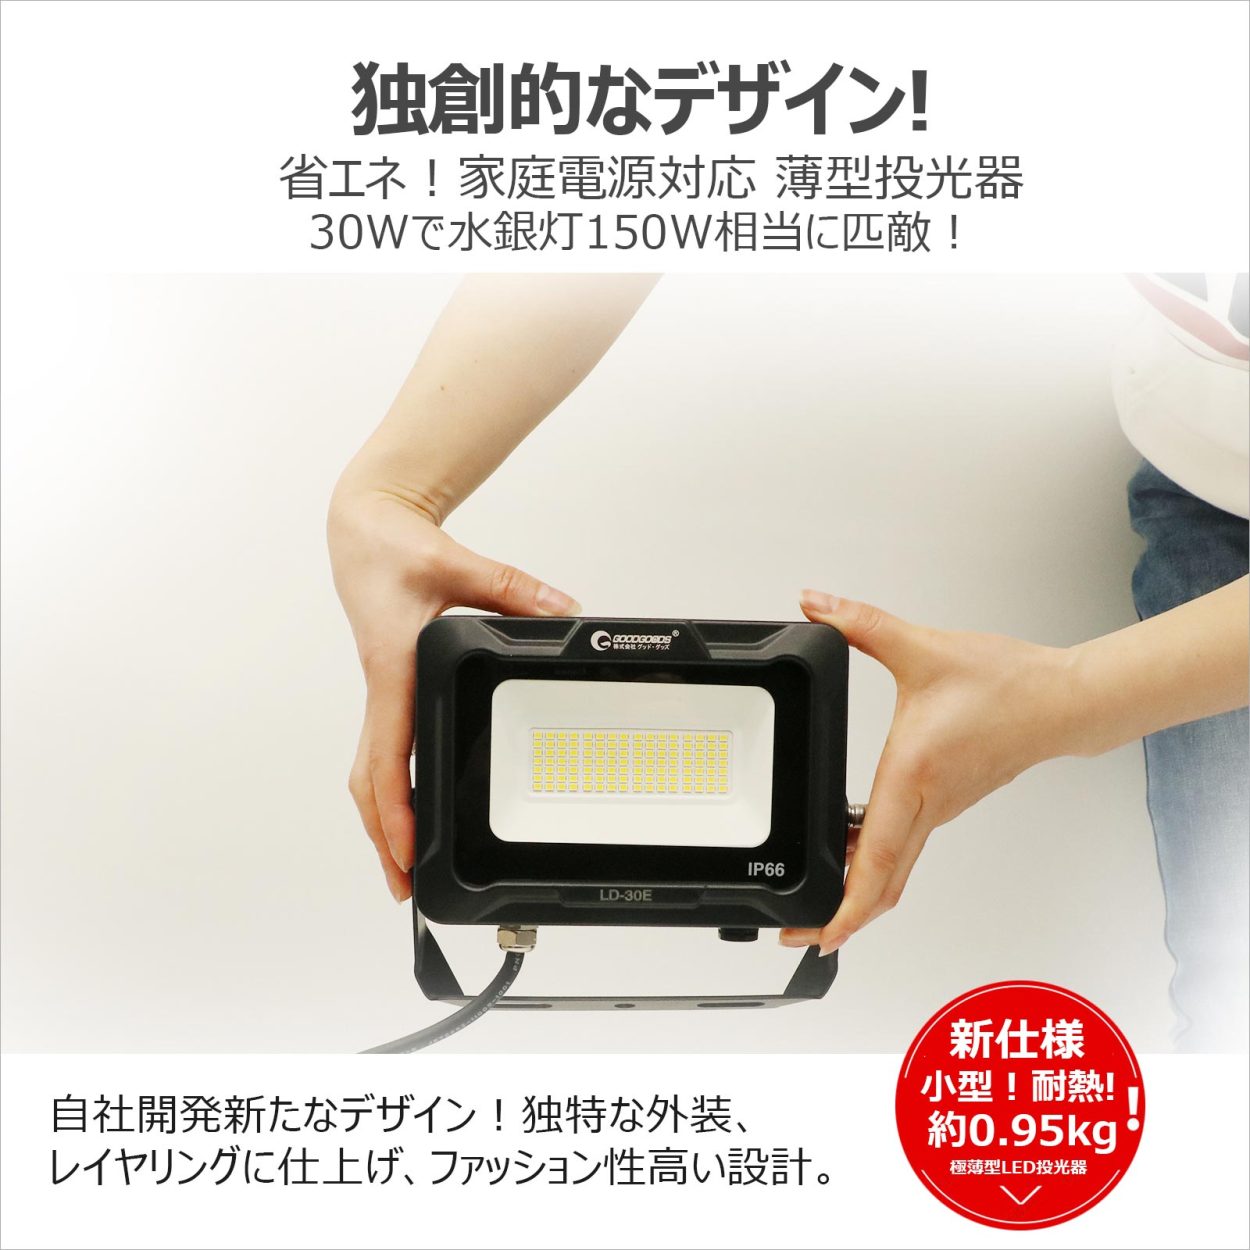 30w led投光器 高輝度 耐風 耐震 屋外照明 投光機 外灯